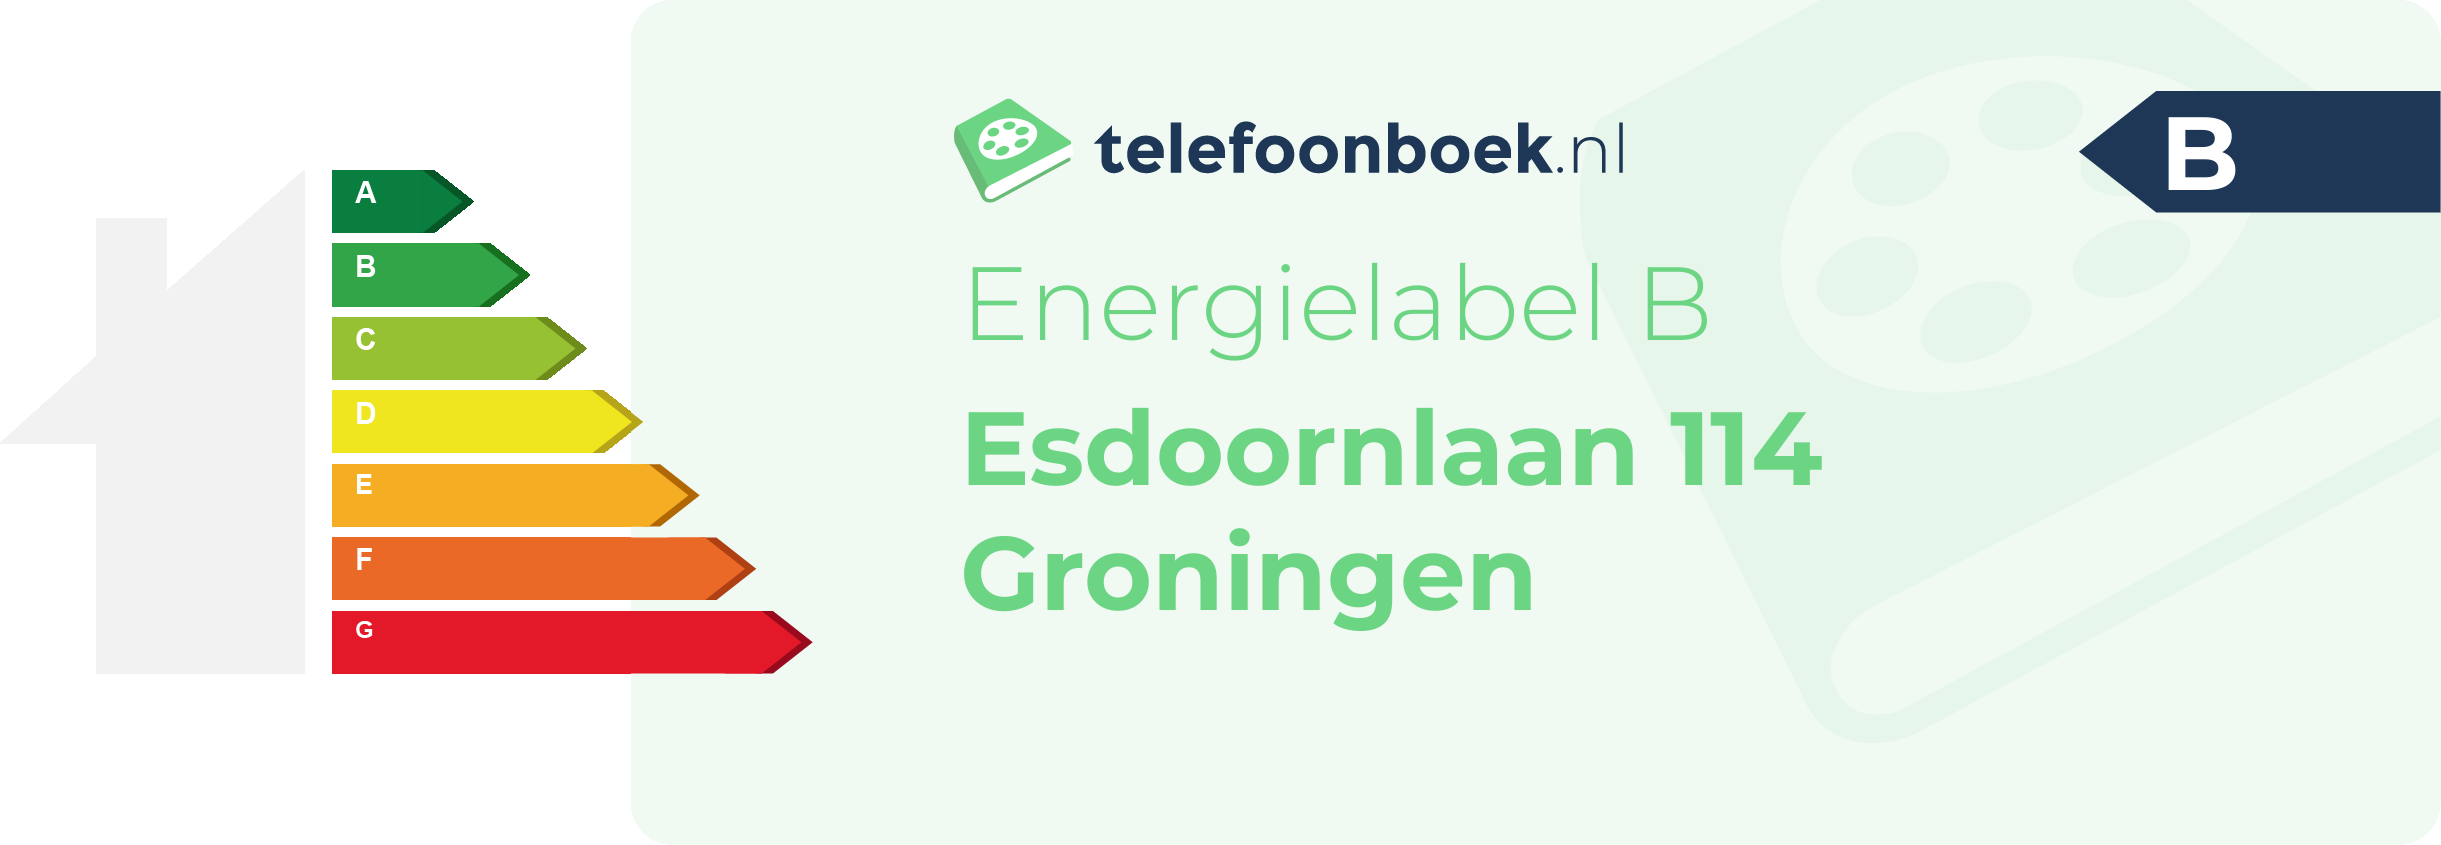 Energielabel Esdoornlaan 114 Groningen